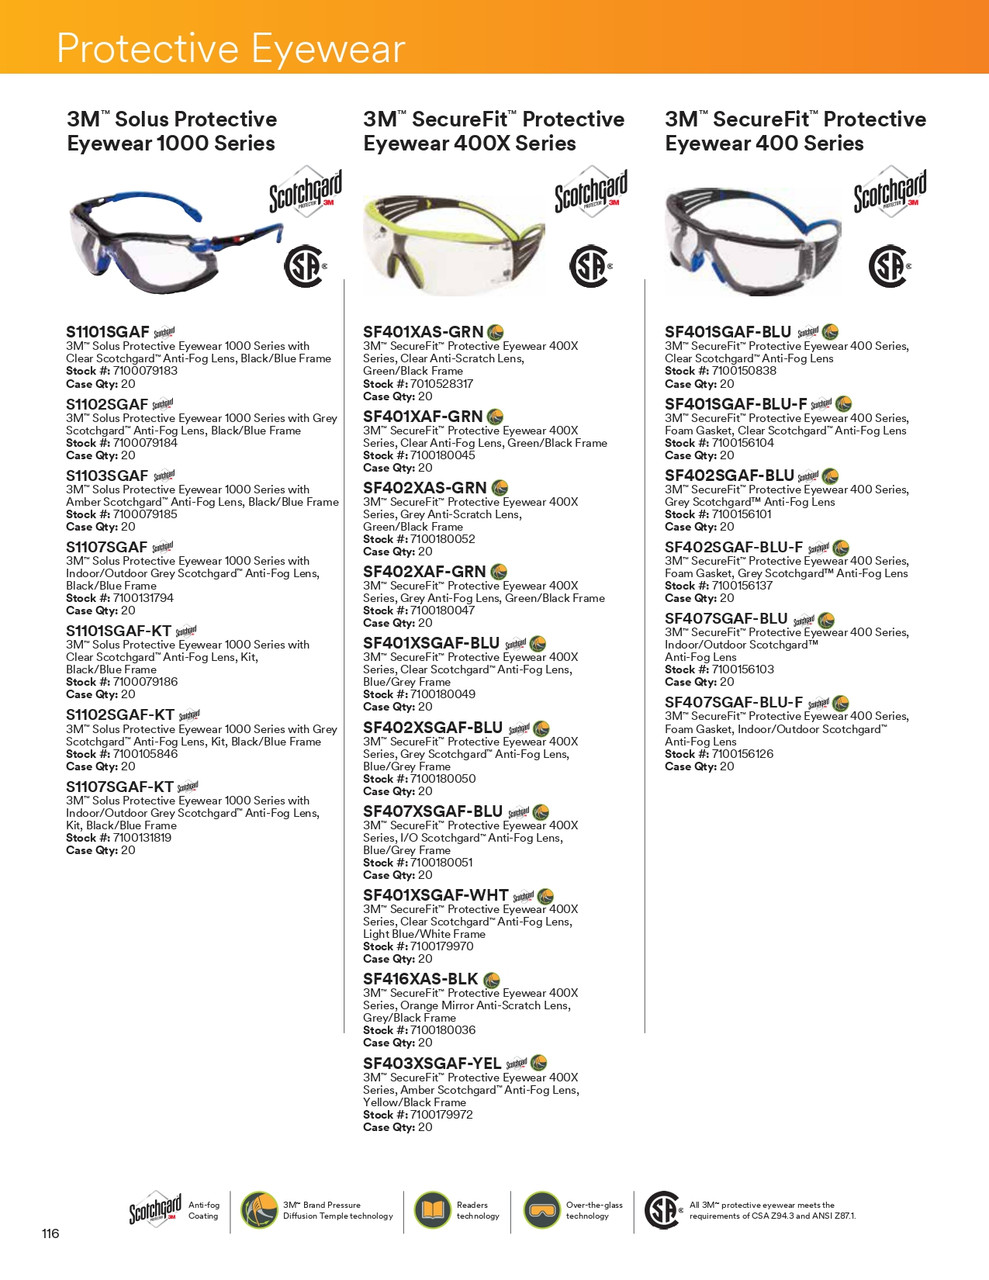 Securefit® Scotchgard® 400X Series Safety Glasses w/Clear Lens  SF401XSGAF-BLU